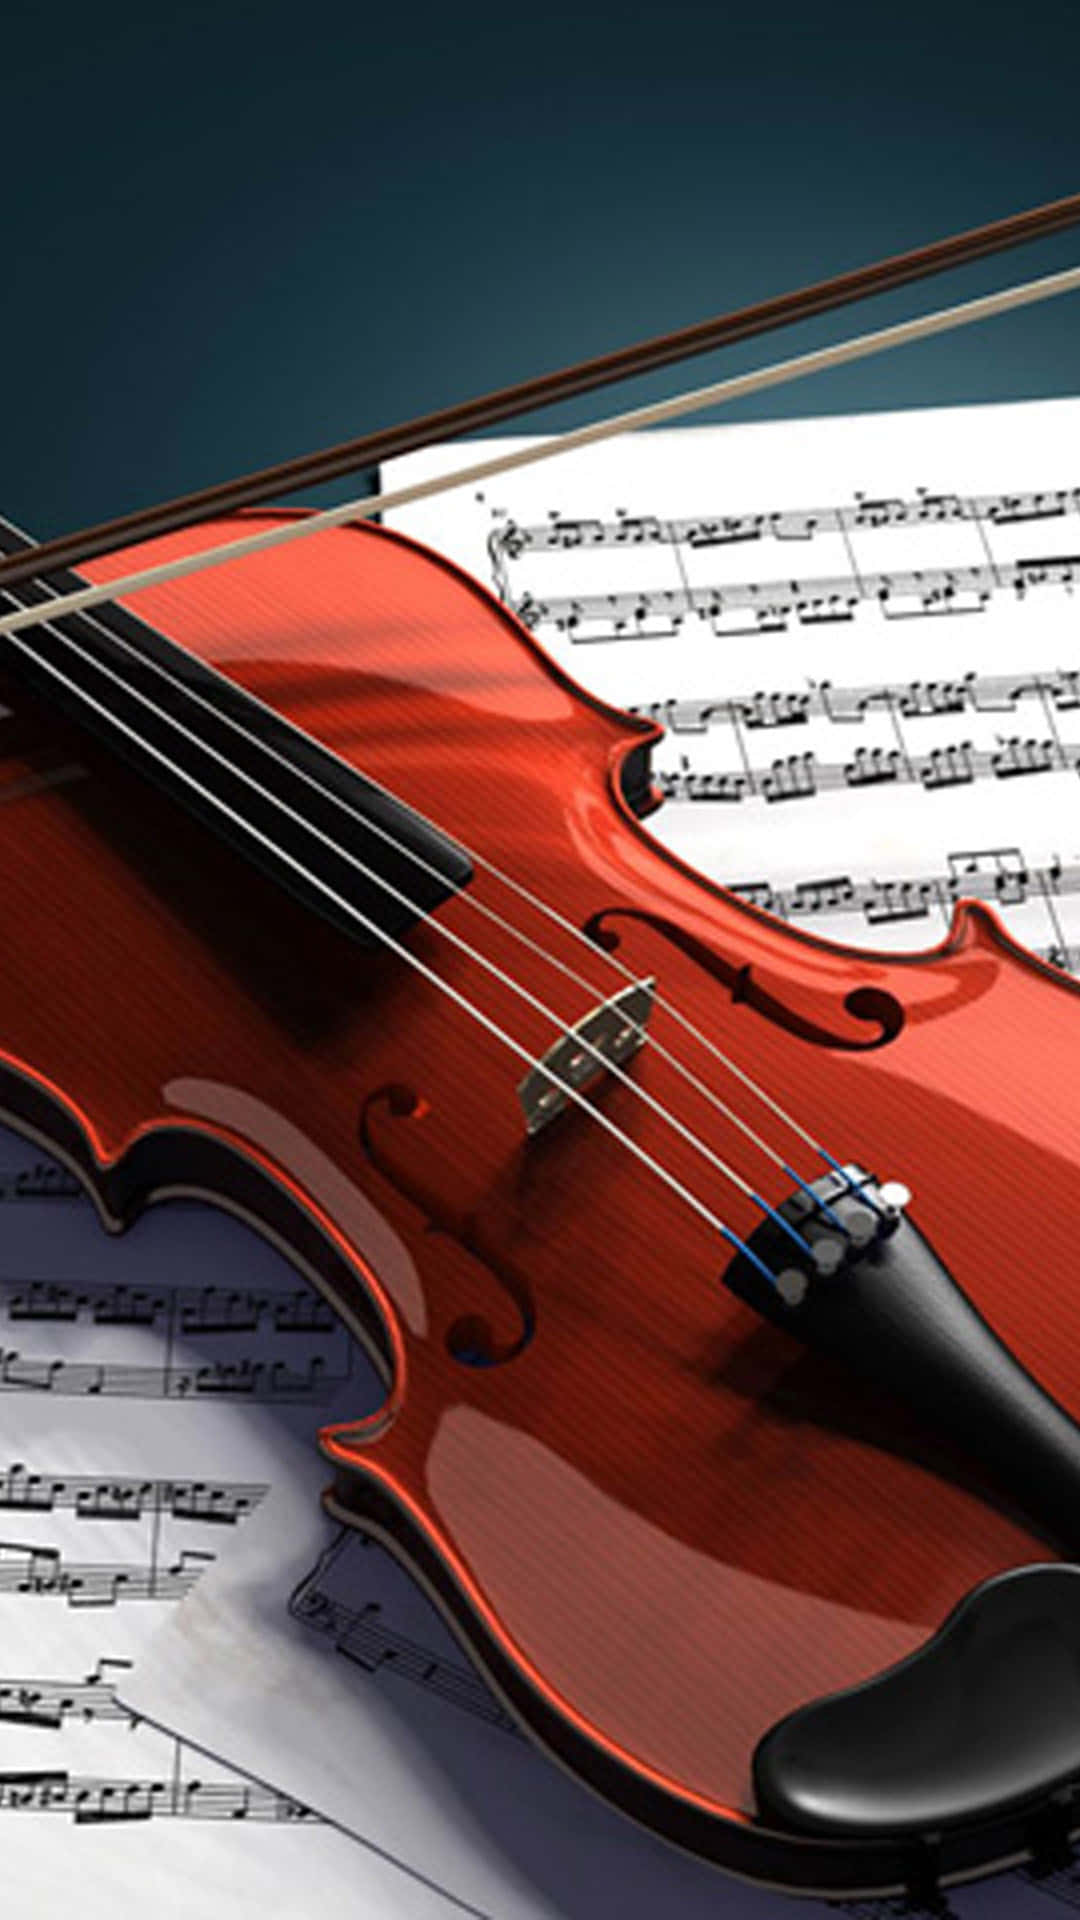 Imagemde Violino Em Folha De Música.